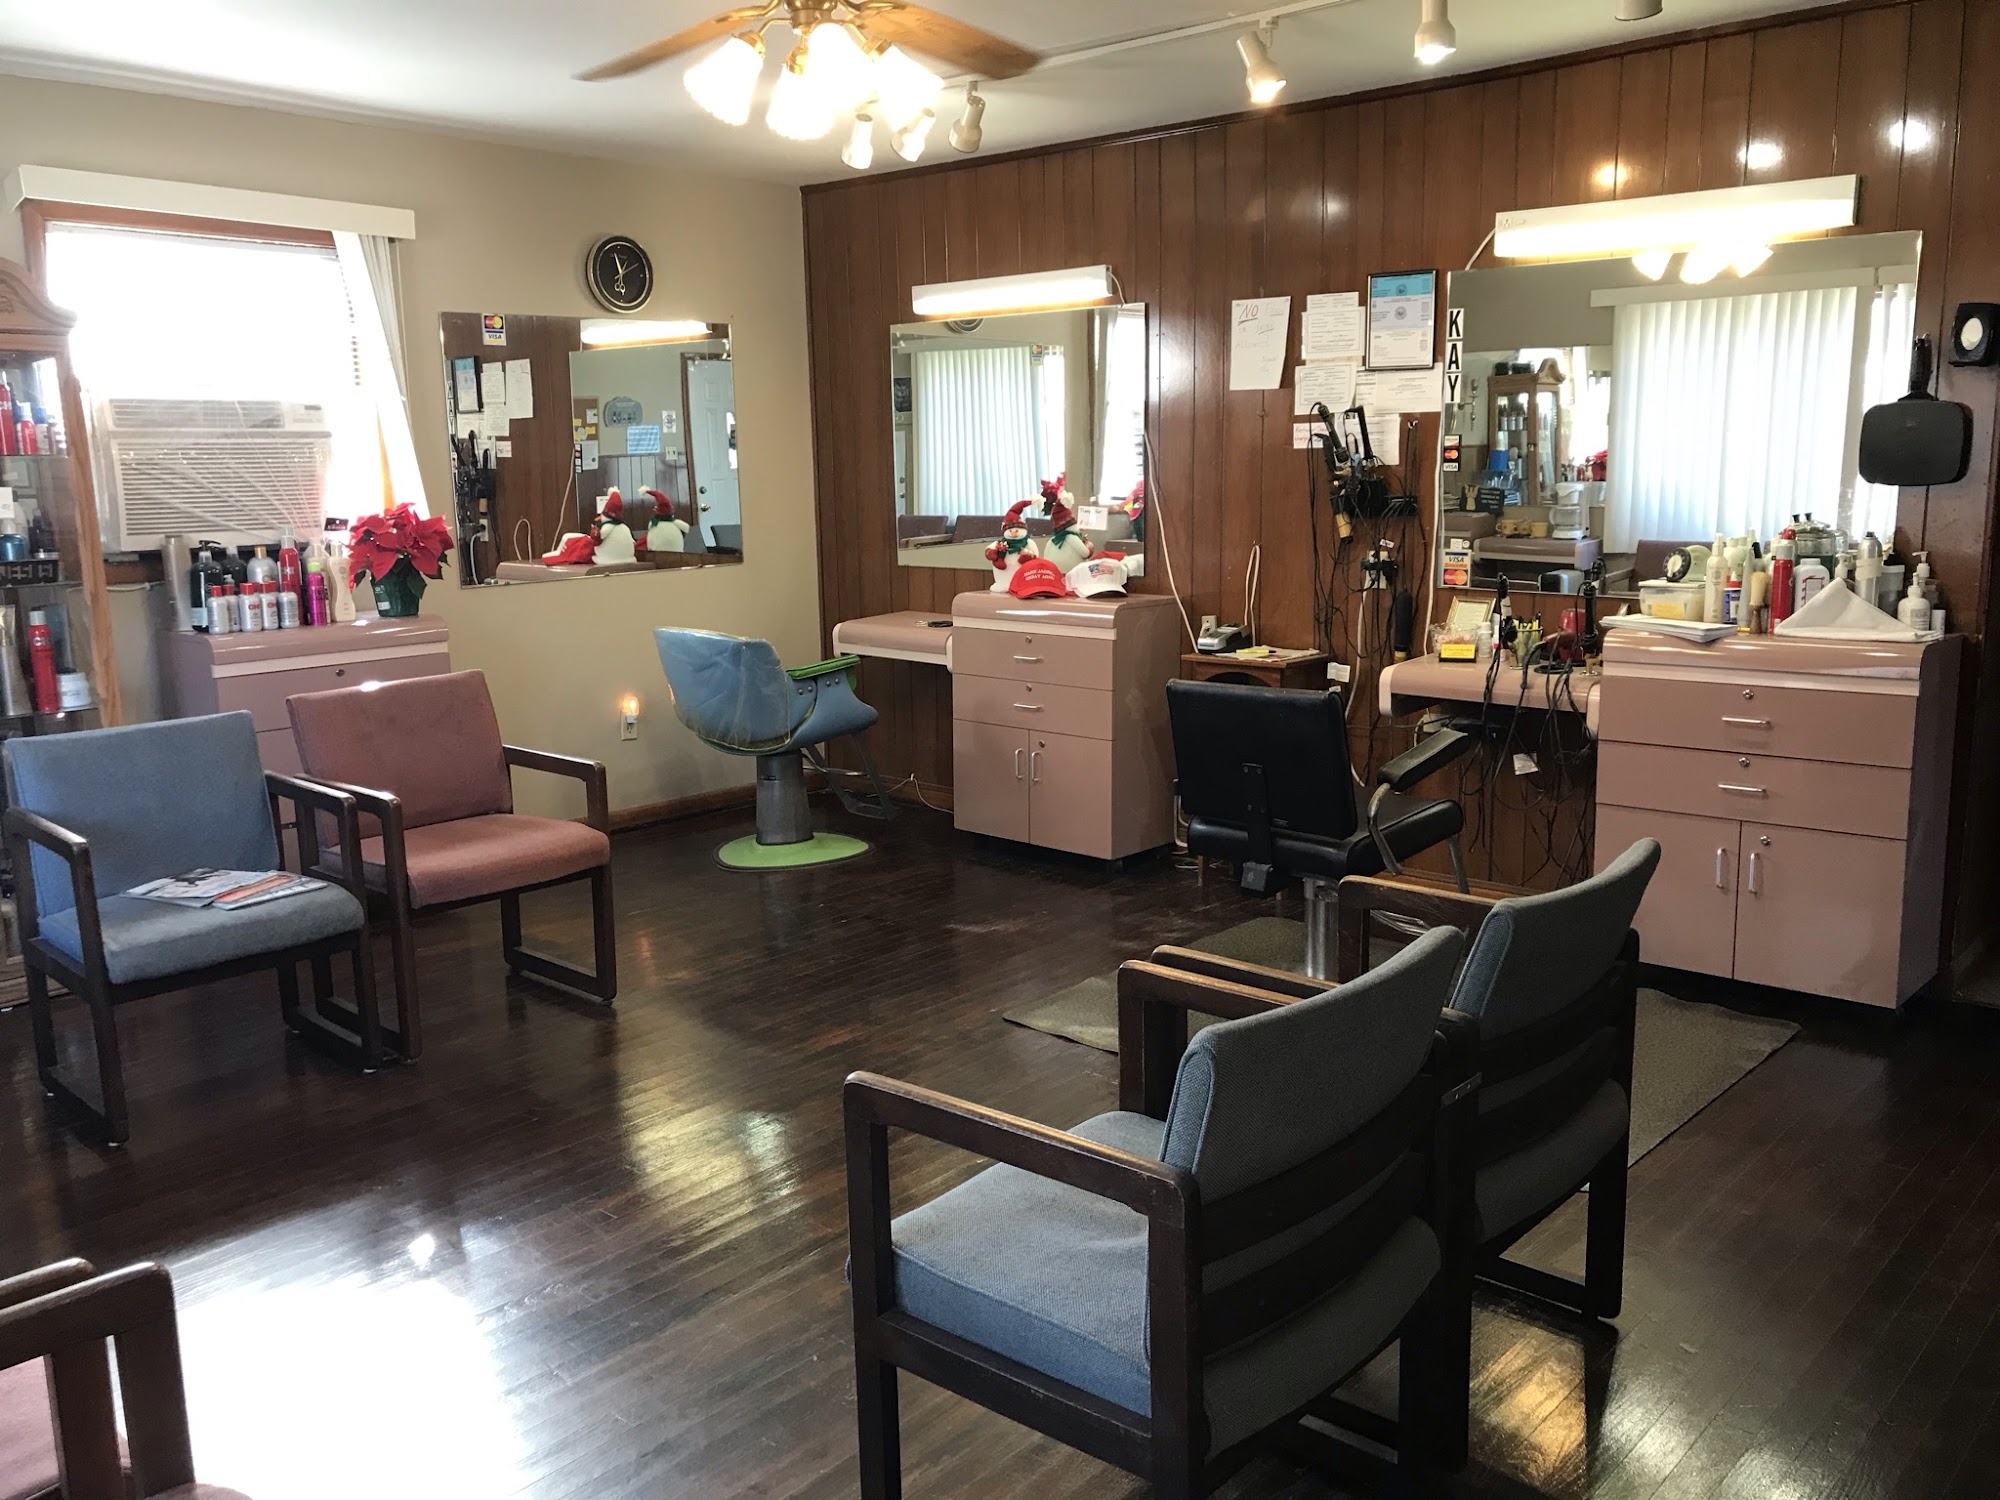 Sure Cut Hair Shop 4729 WV-152, Lavalette West Virginia 25535